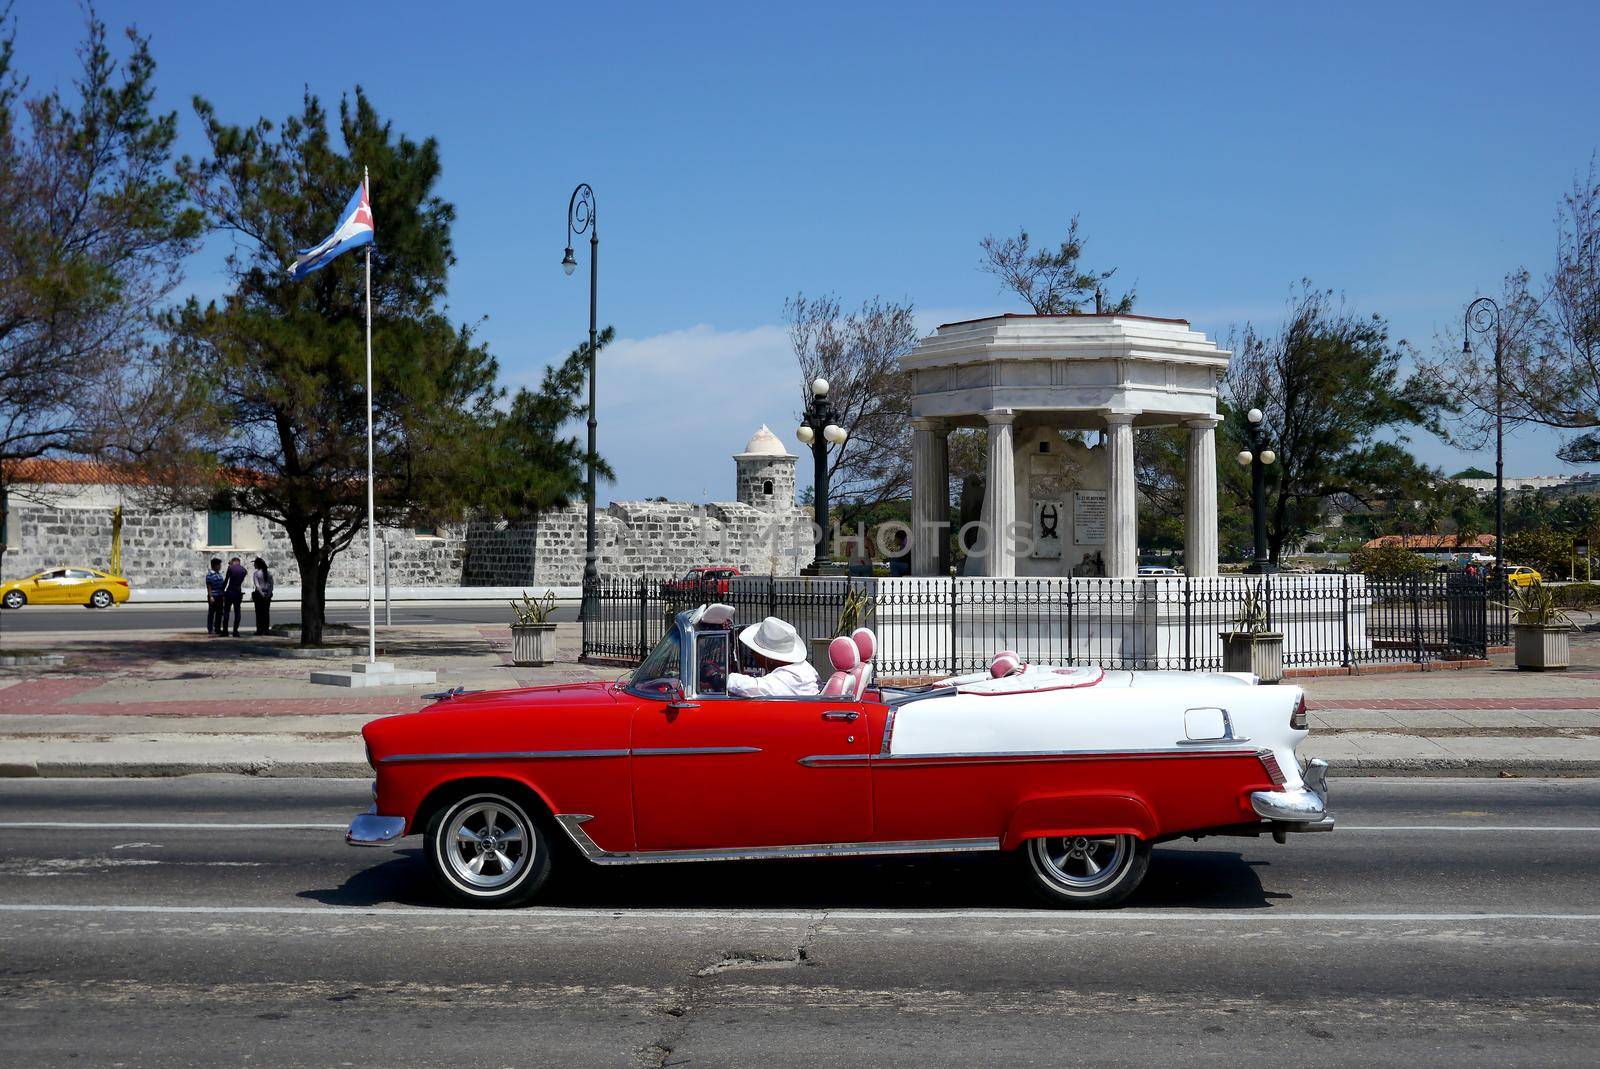 Old car in Havana backstreet, Cuba